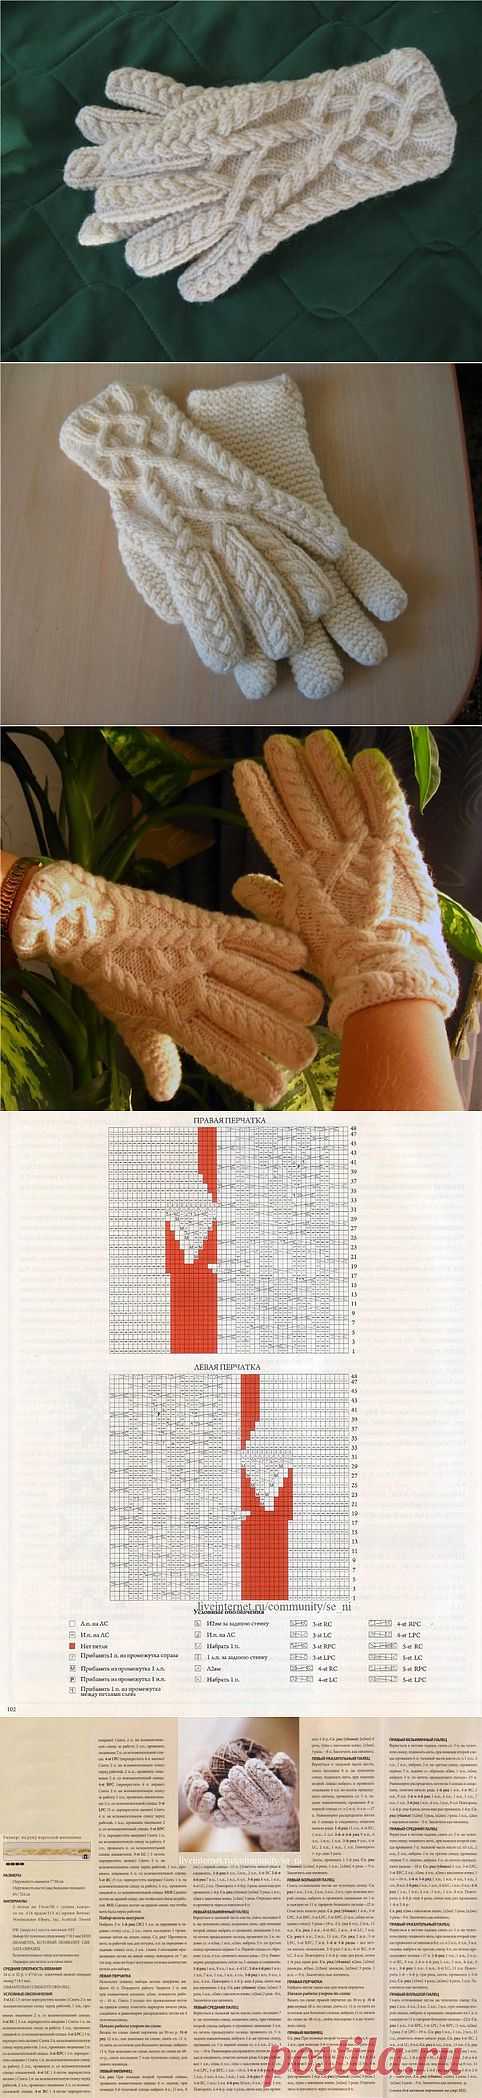 Замечательные перчатки, дизайнера - Джареда Флада..